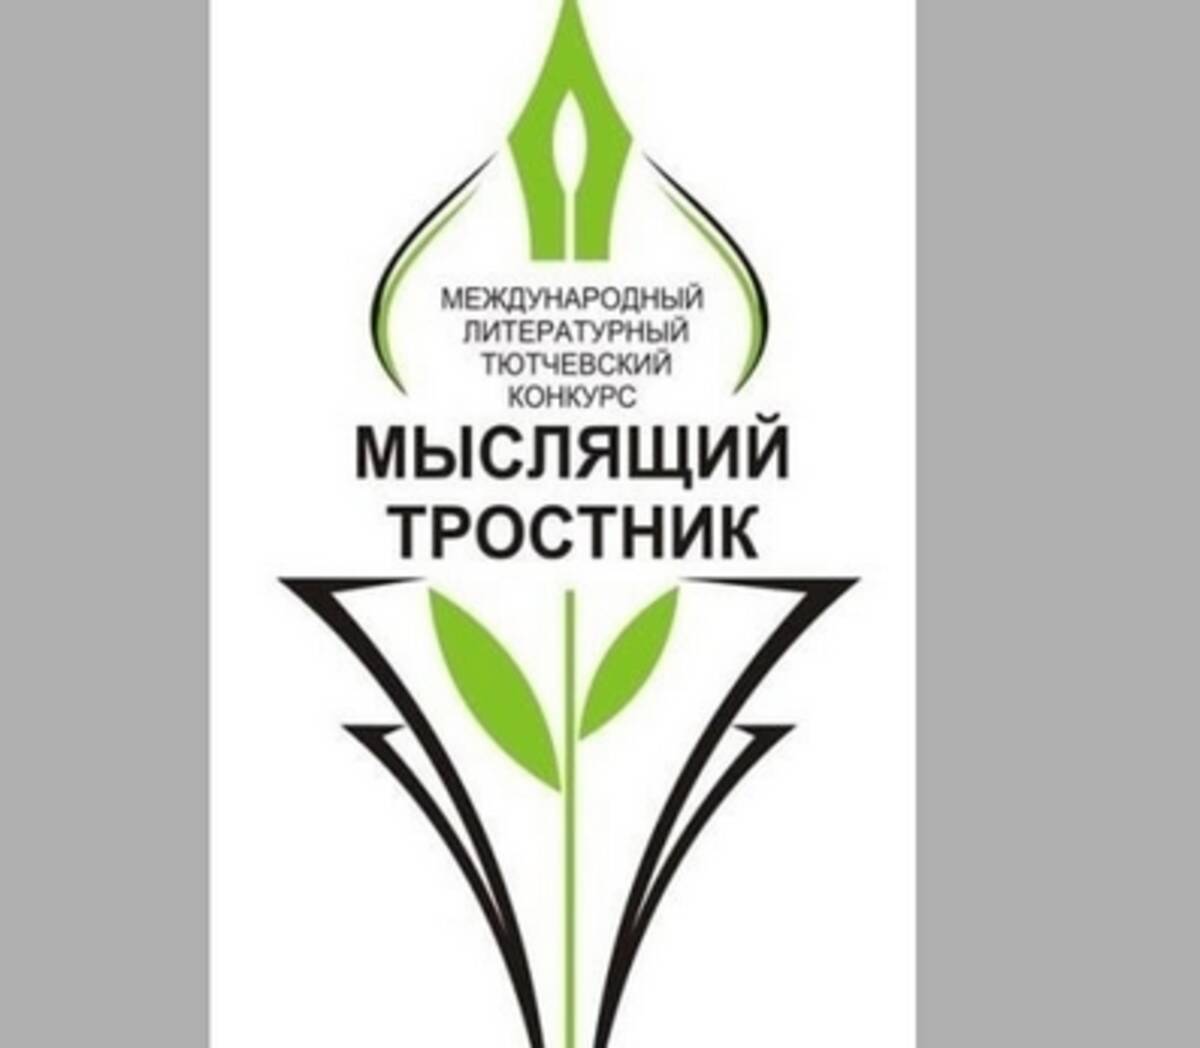 Жителей Брянской области пригласили принять участие в конкурсе «Мыслящий тростник»